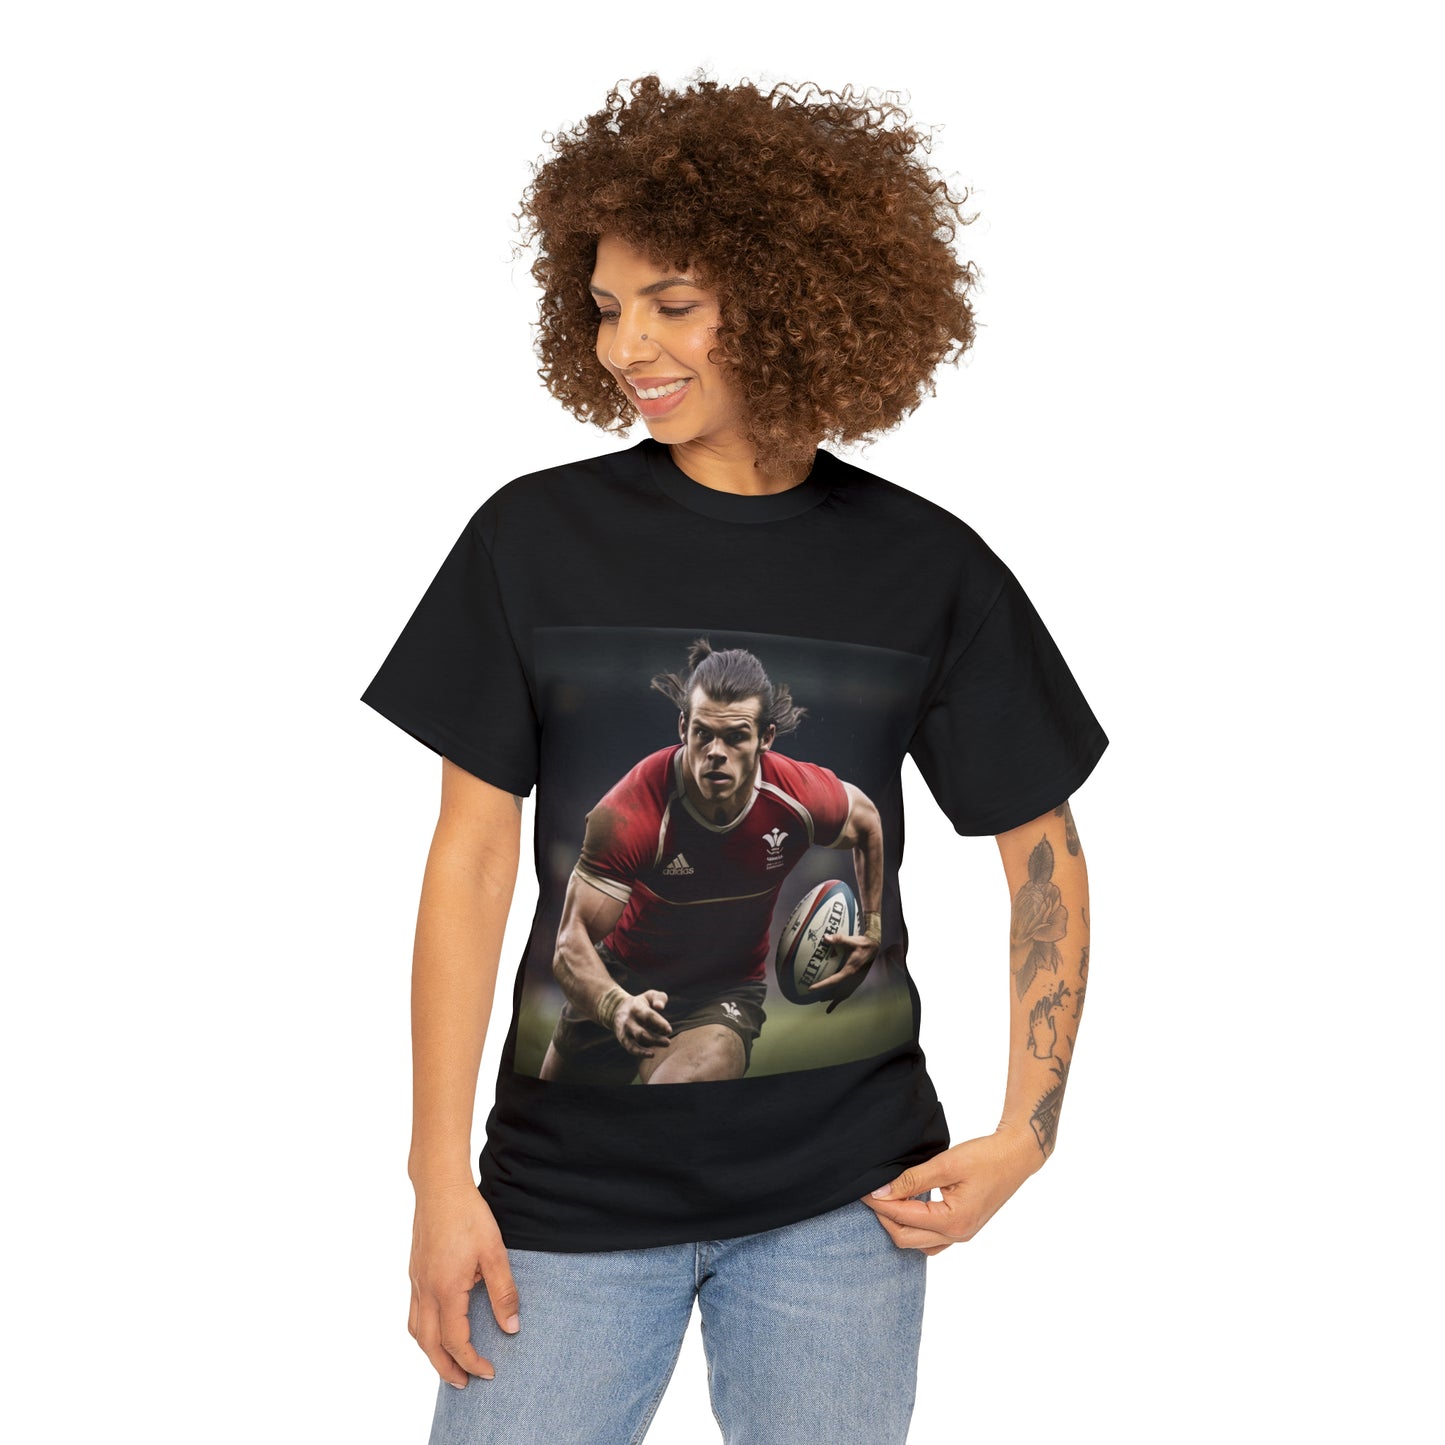 Ready Bale - dark shirts